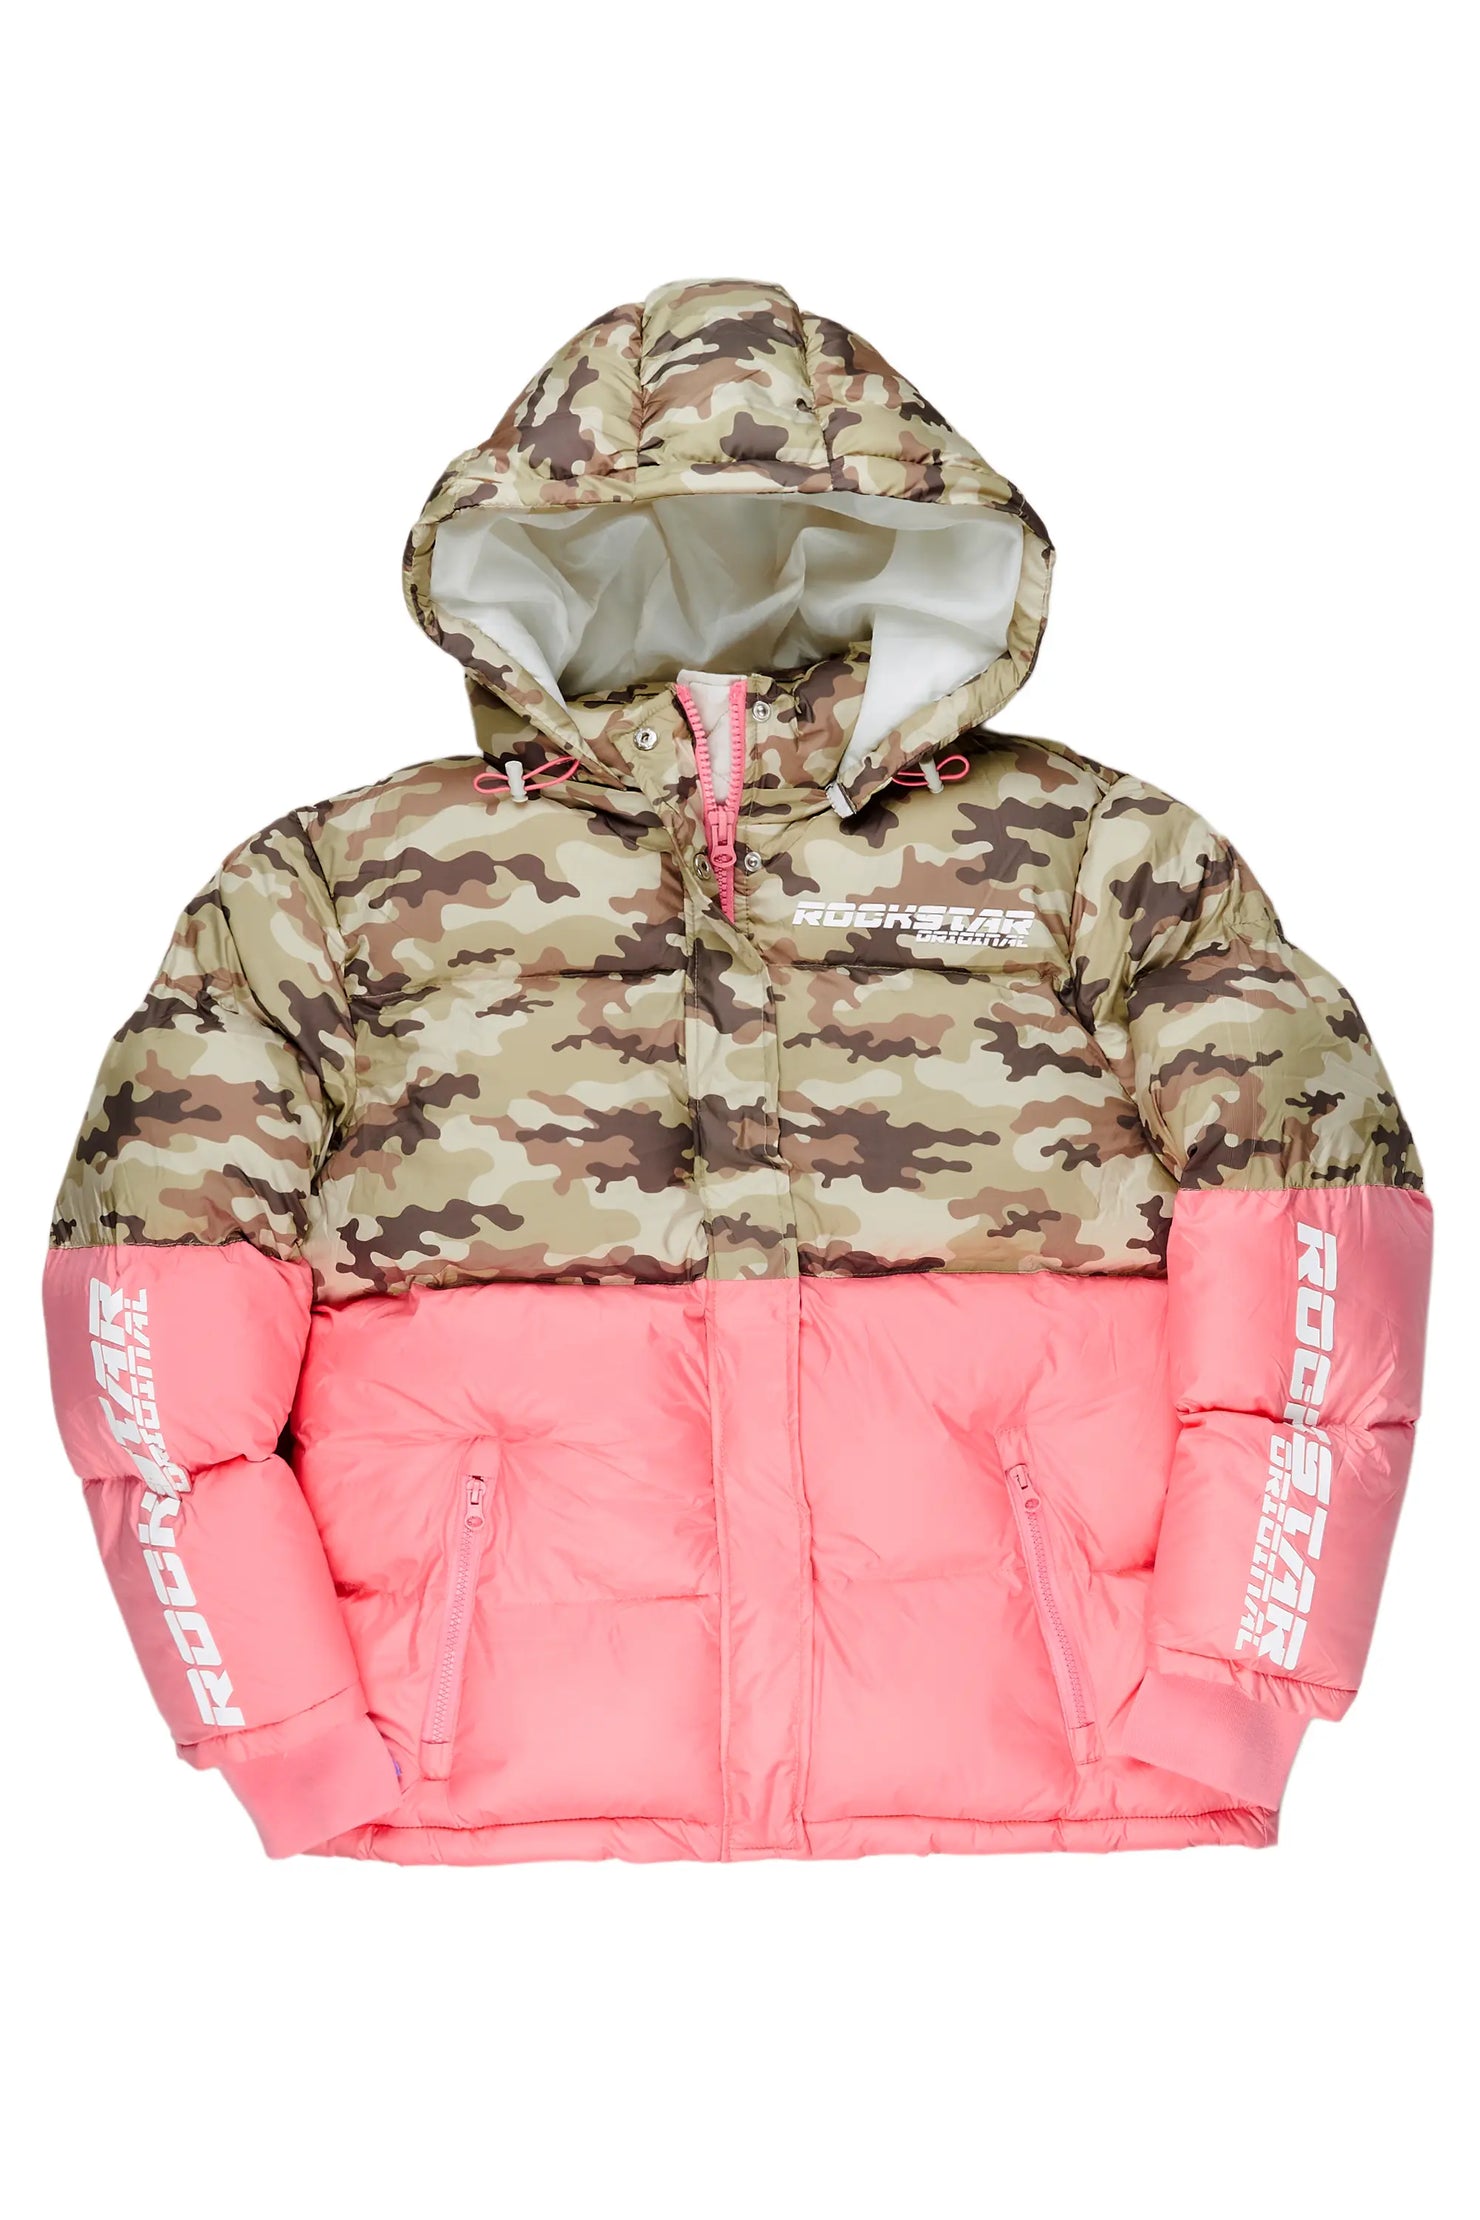 Jennay Pink/Camo Puffer Jacket